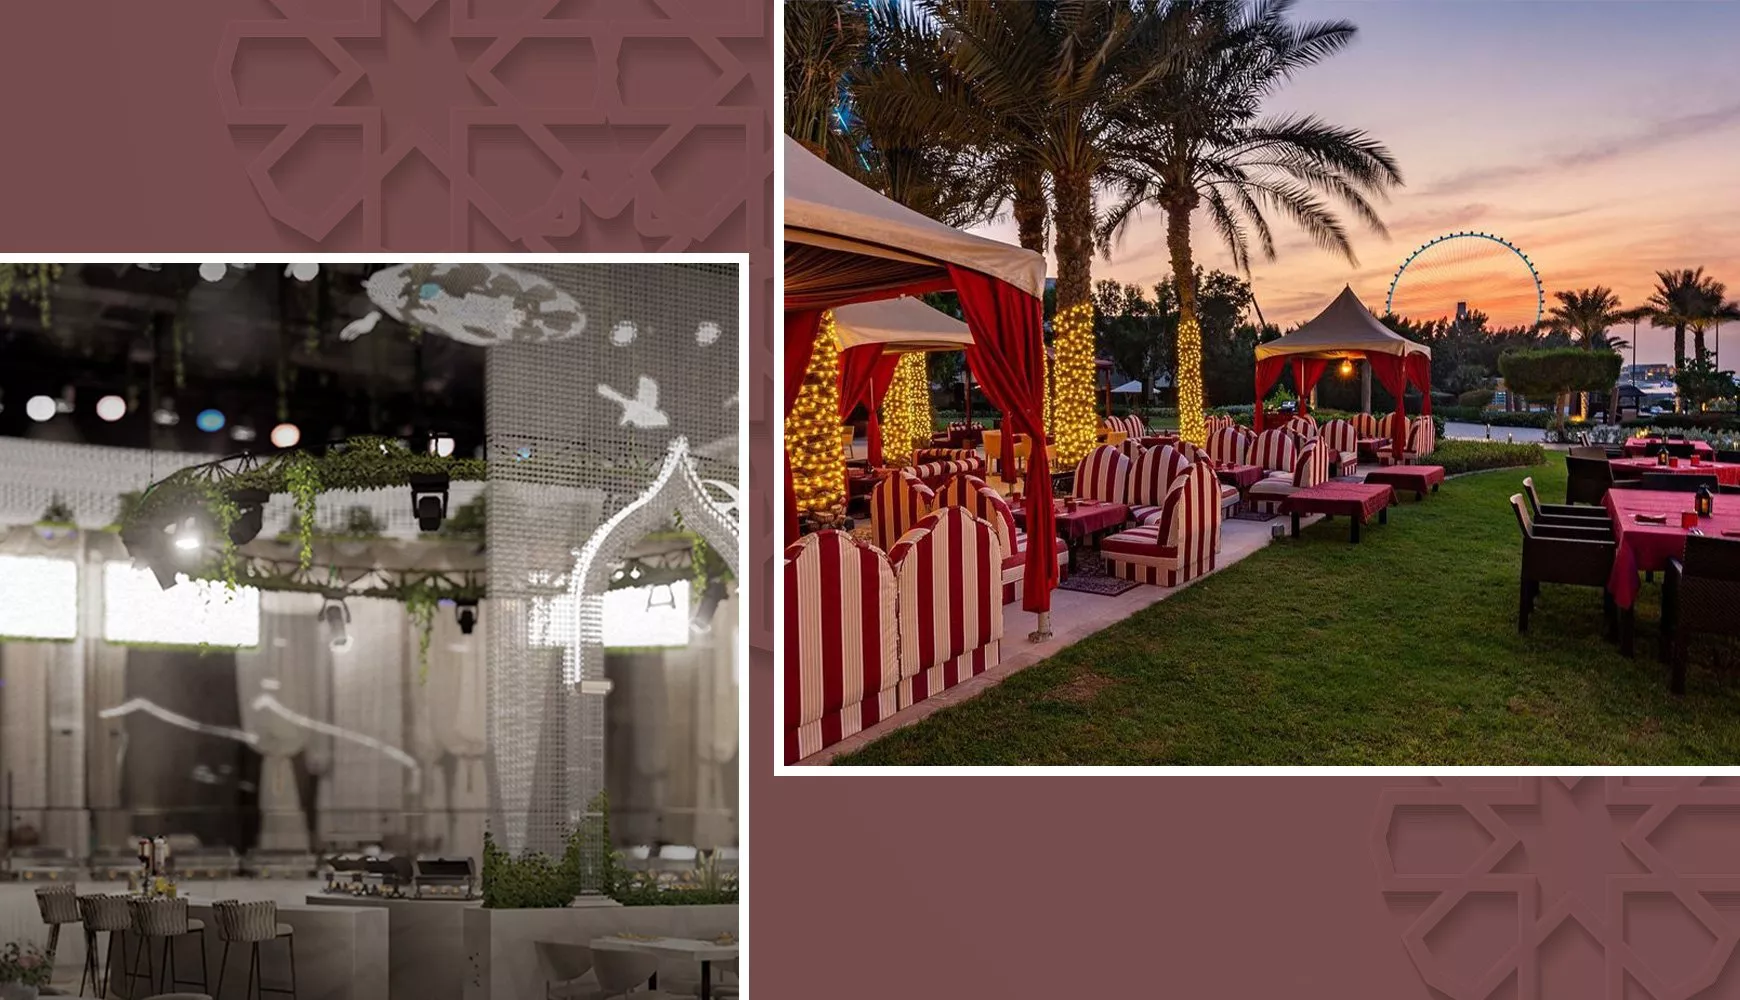 أبرز الخيم الرمضانية في دبي لجلسات مميّزة مع العائلة والأصدقاء